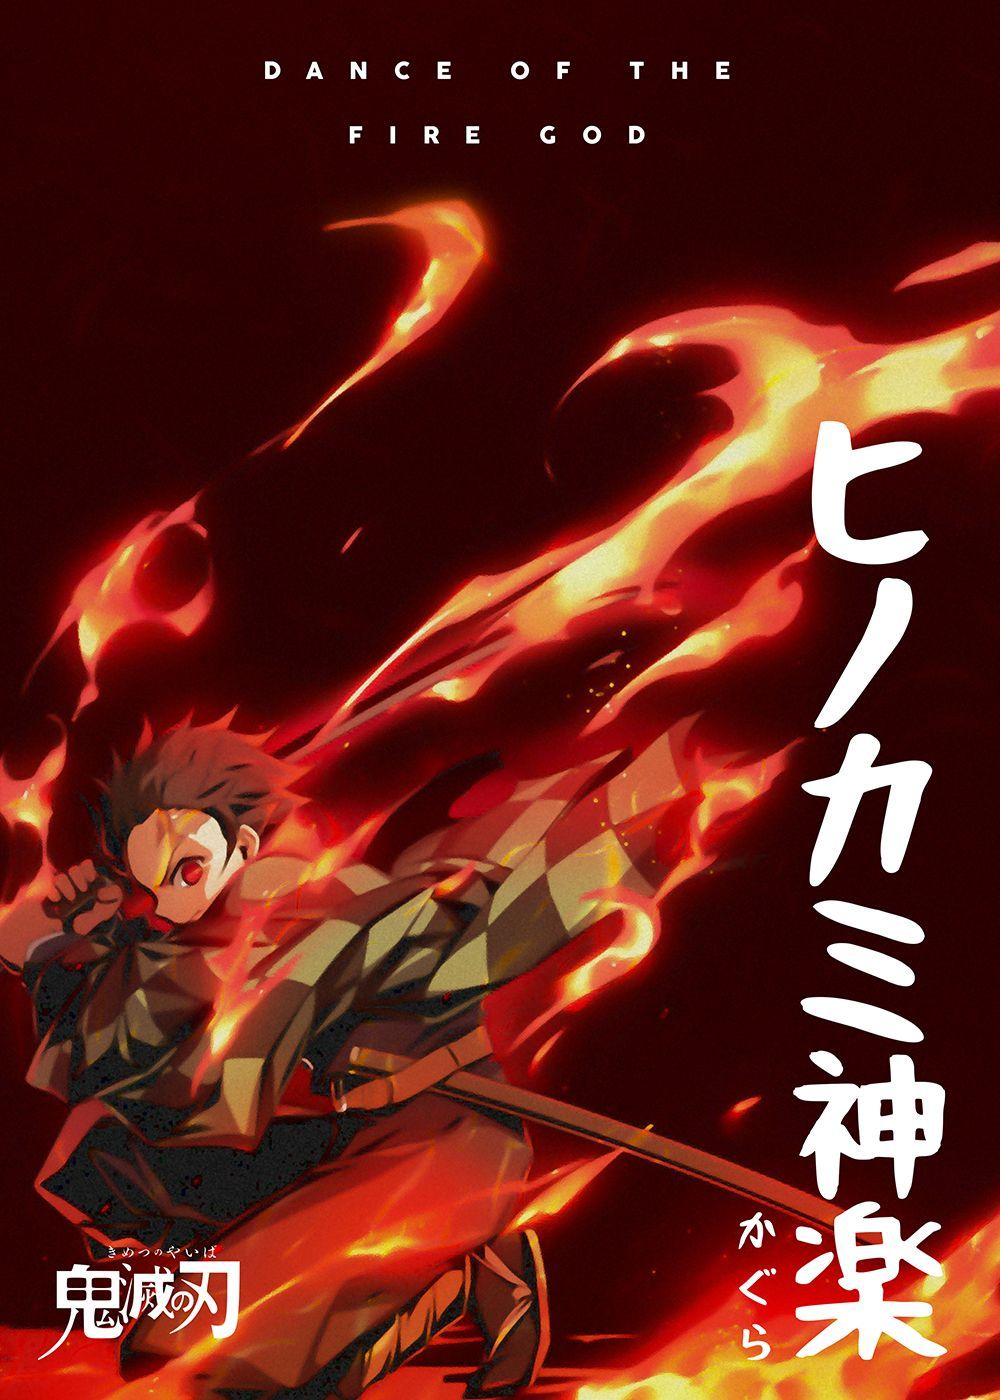 Anime Demon Slayer Tanjiro' Metal Poster Print Awesome. Displate. Poster prints, Anime wall art, Anime wallpaper